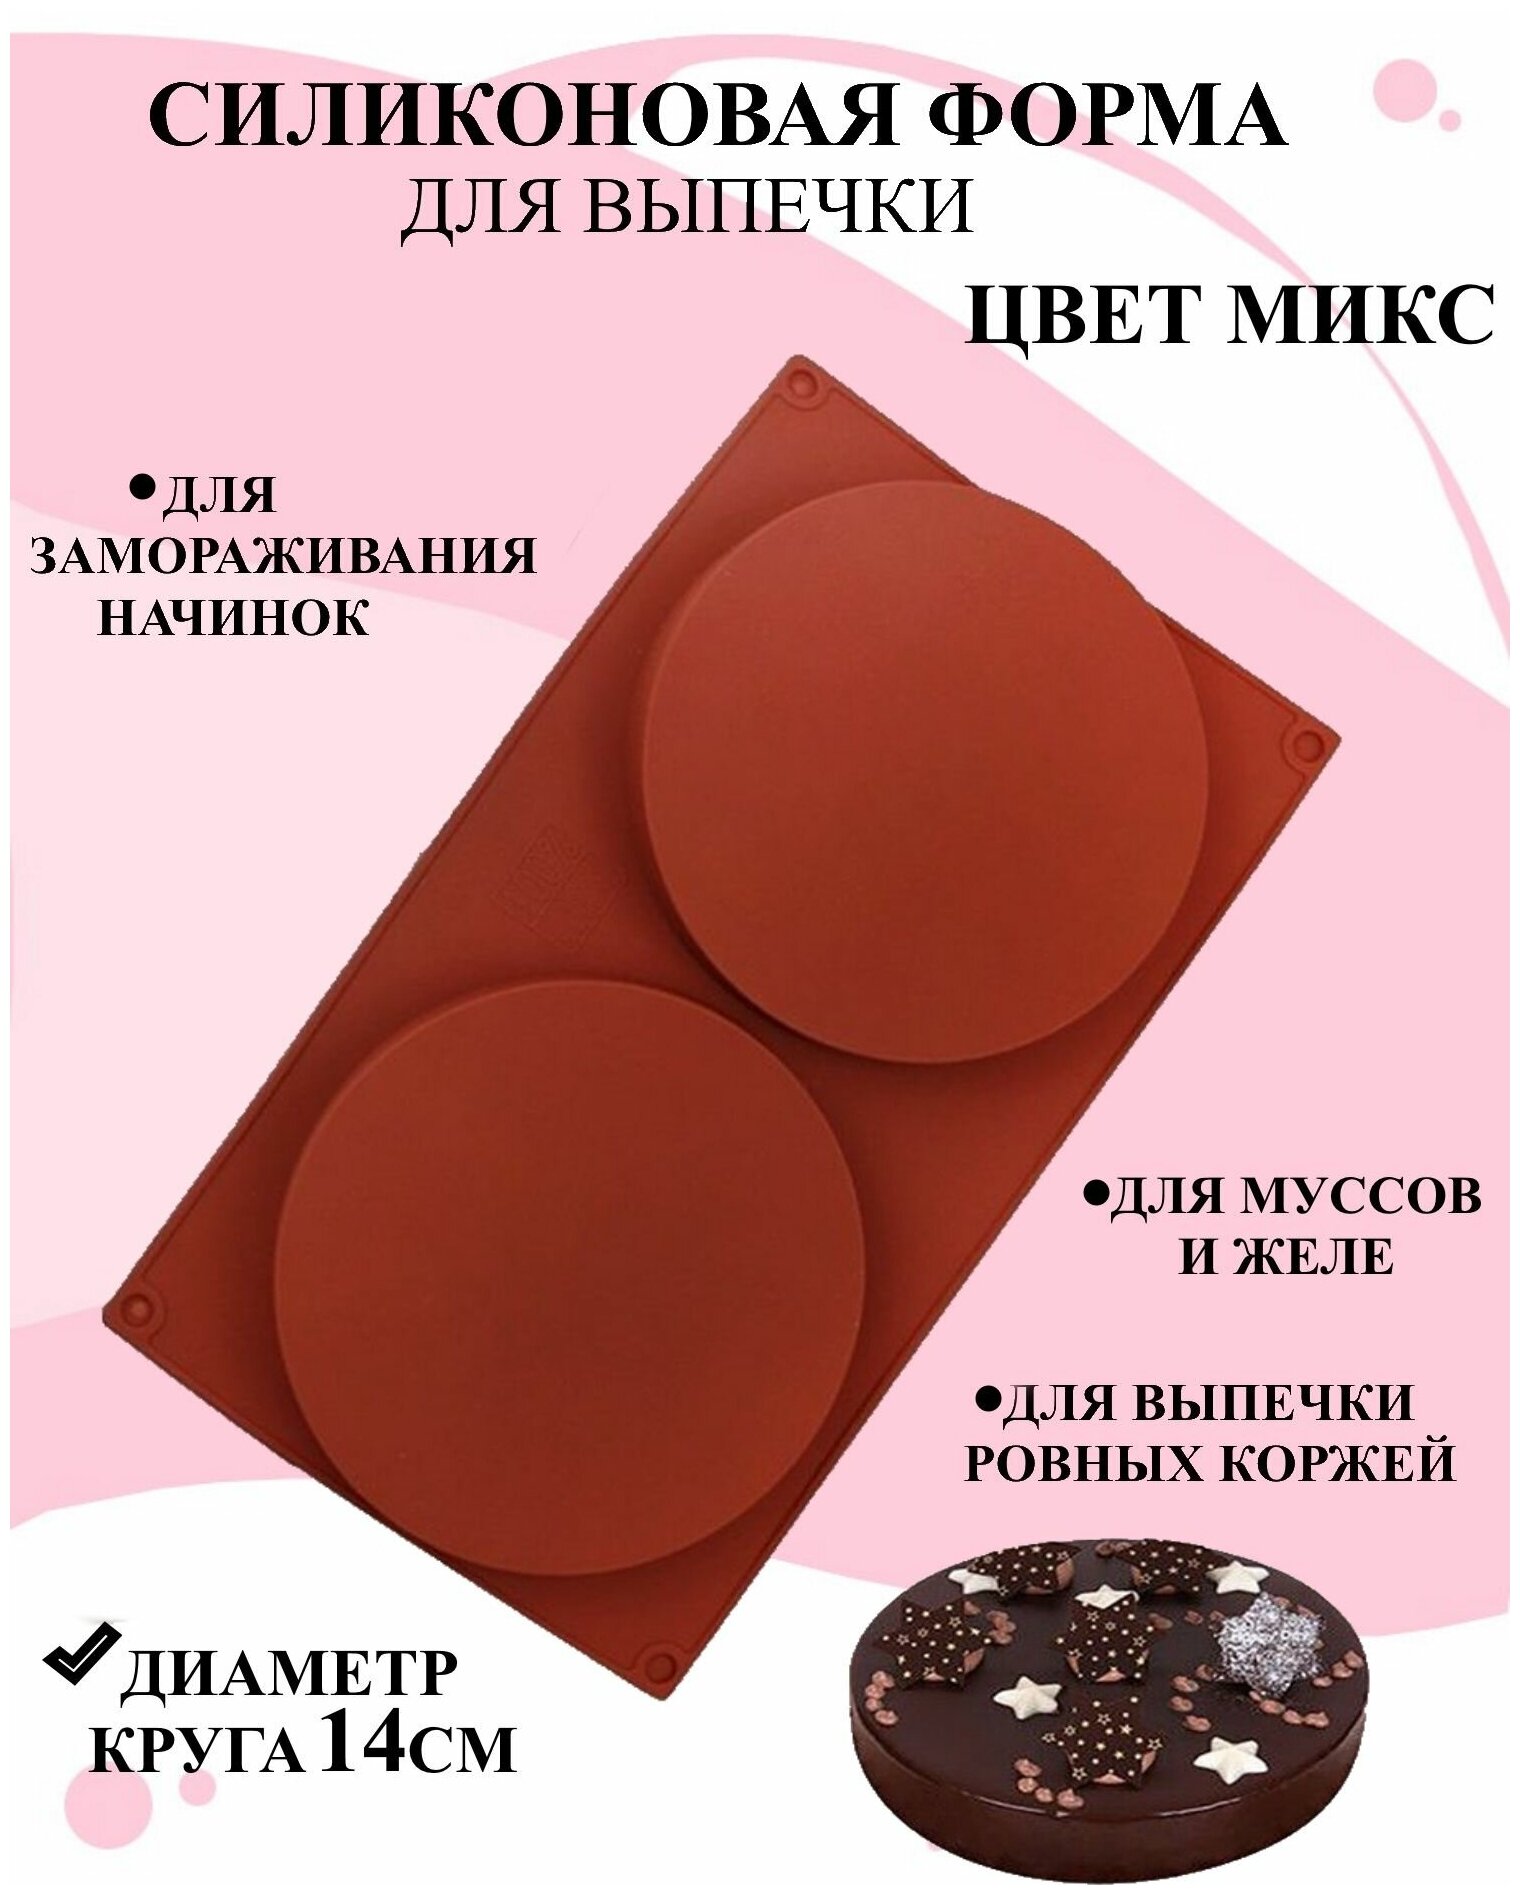 Форма силиконовая диски, Форма силиконовая два круга, Форма для выпечки, Форма для замораживания начинки, Форма силиконовая для шоколада